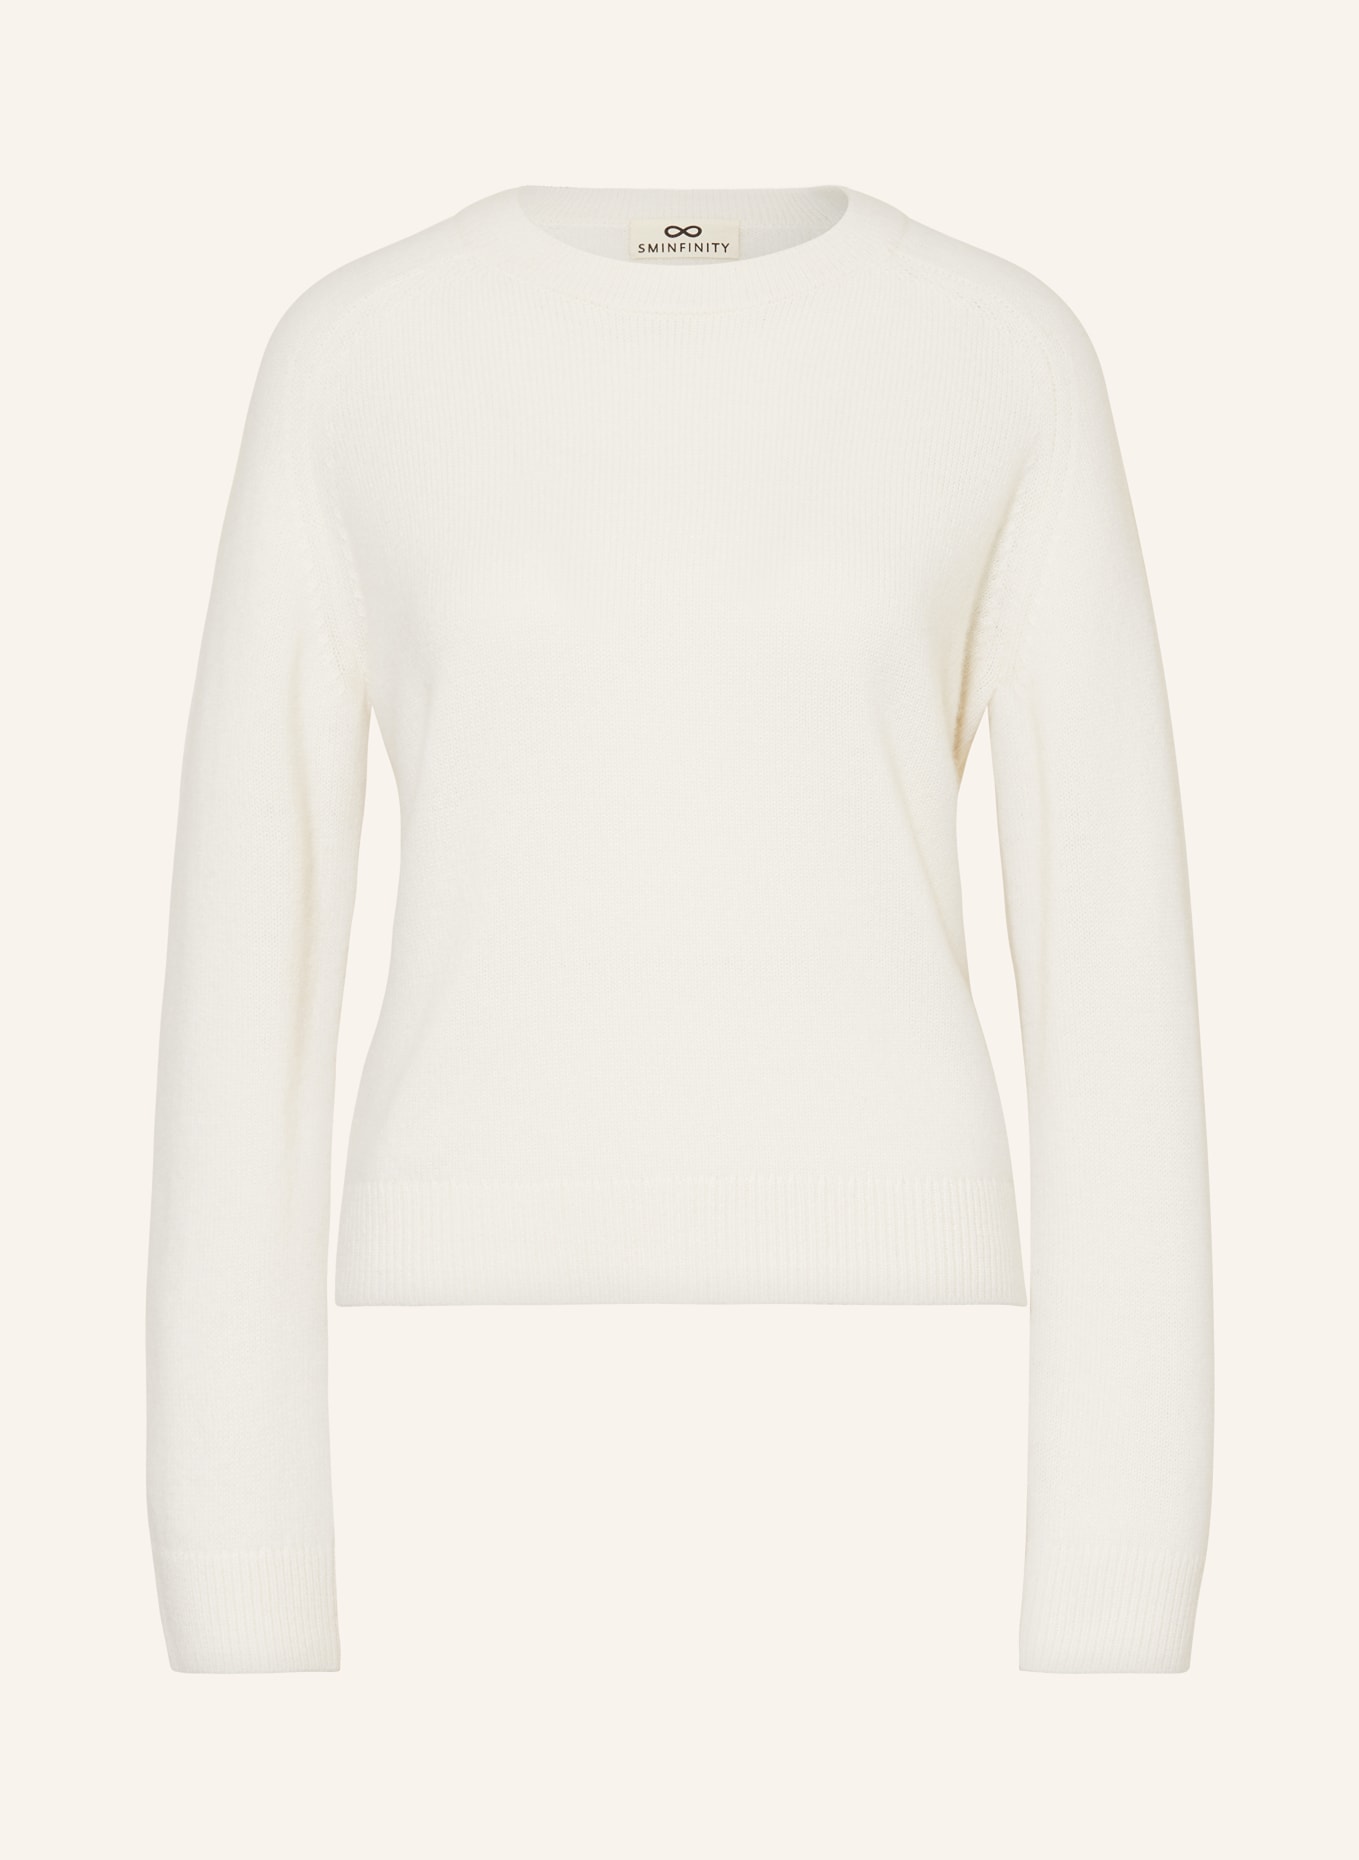 SMINFINITY Cashmere-Pullover, Farbe: ECRU (Bild 1)